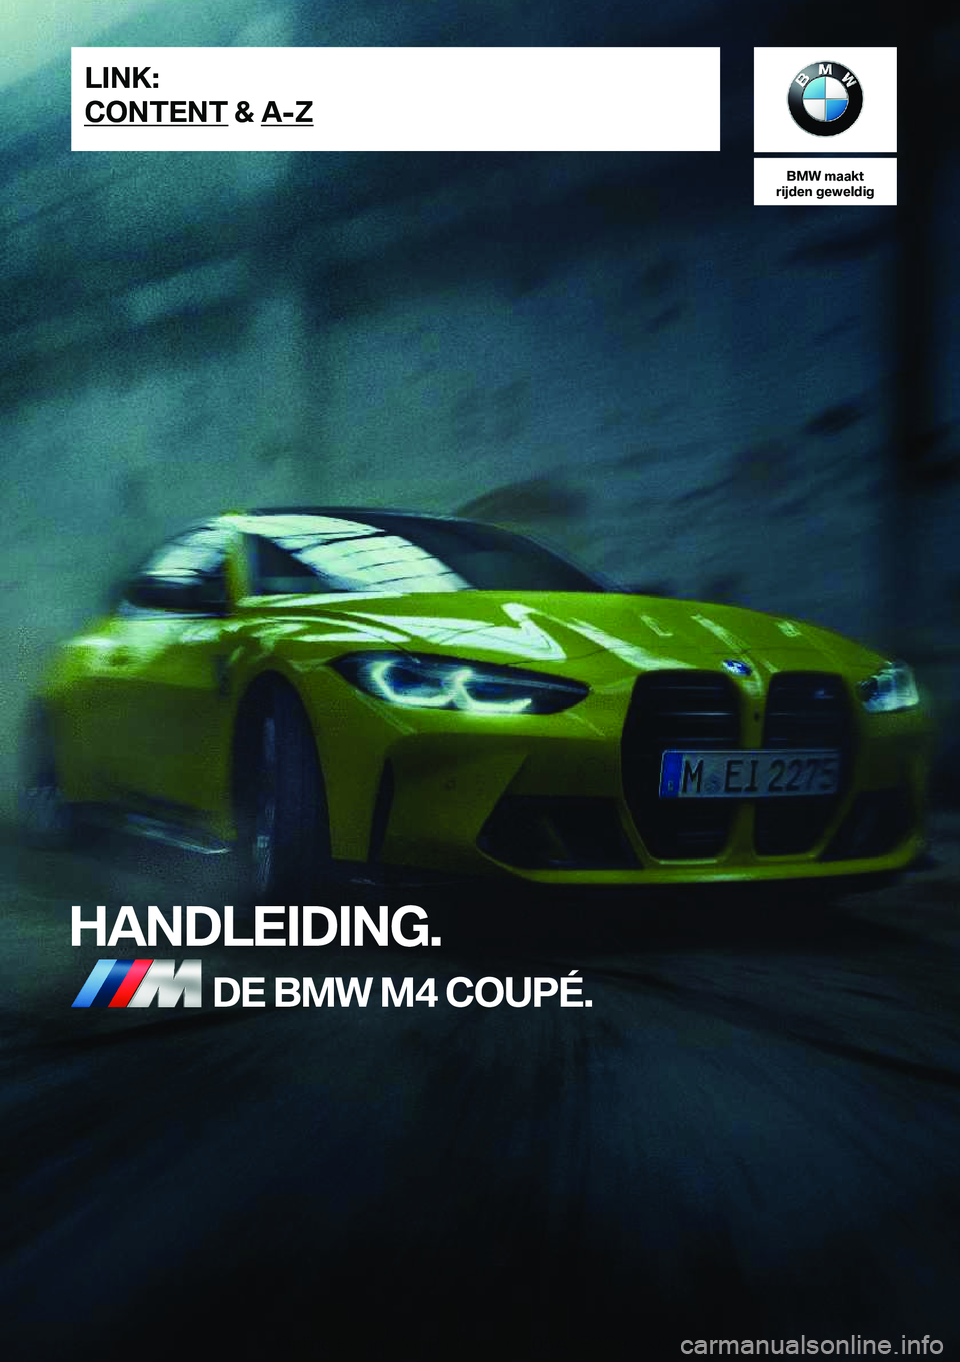 BMW M4 2021  Instructieboekjes (in Dutch) �B�M�W��m�a�a�k�t
�r�i�j�d�e�n��g�e�w�e�l�d�i�g
�H�A�N�D�L�E�I�D�I�N�G�.�D�E��B�M�W��M�4��C�O�U�P�